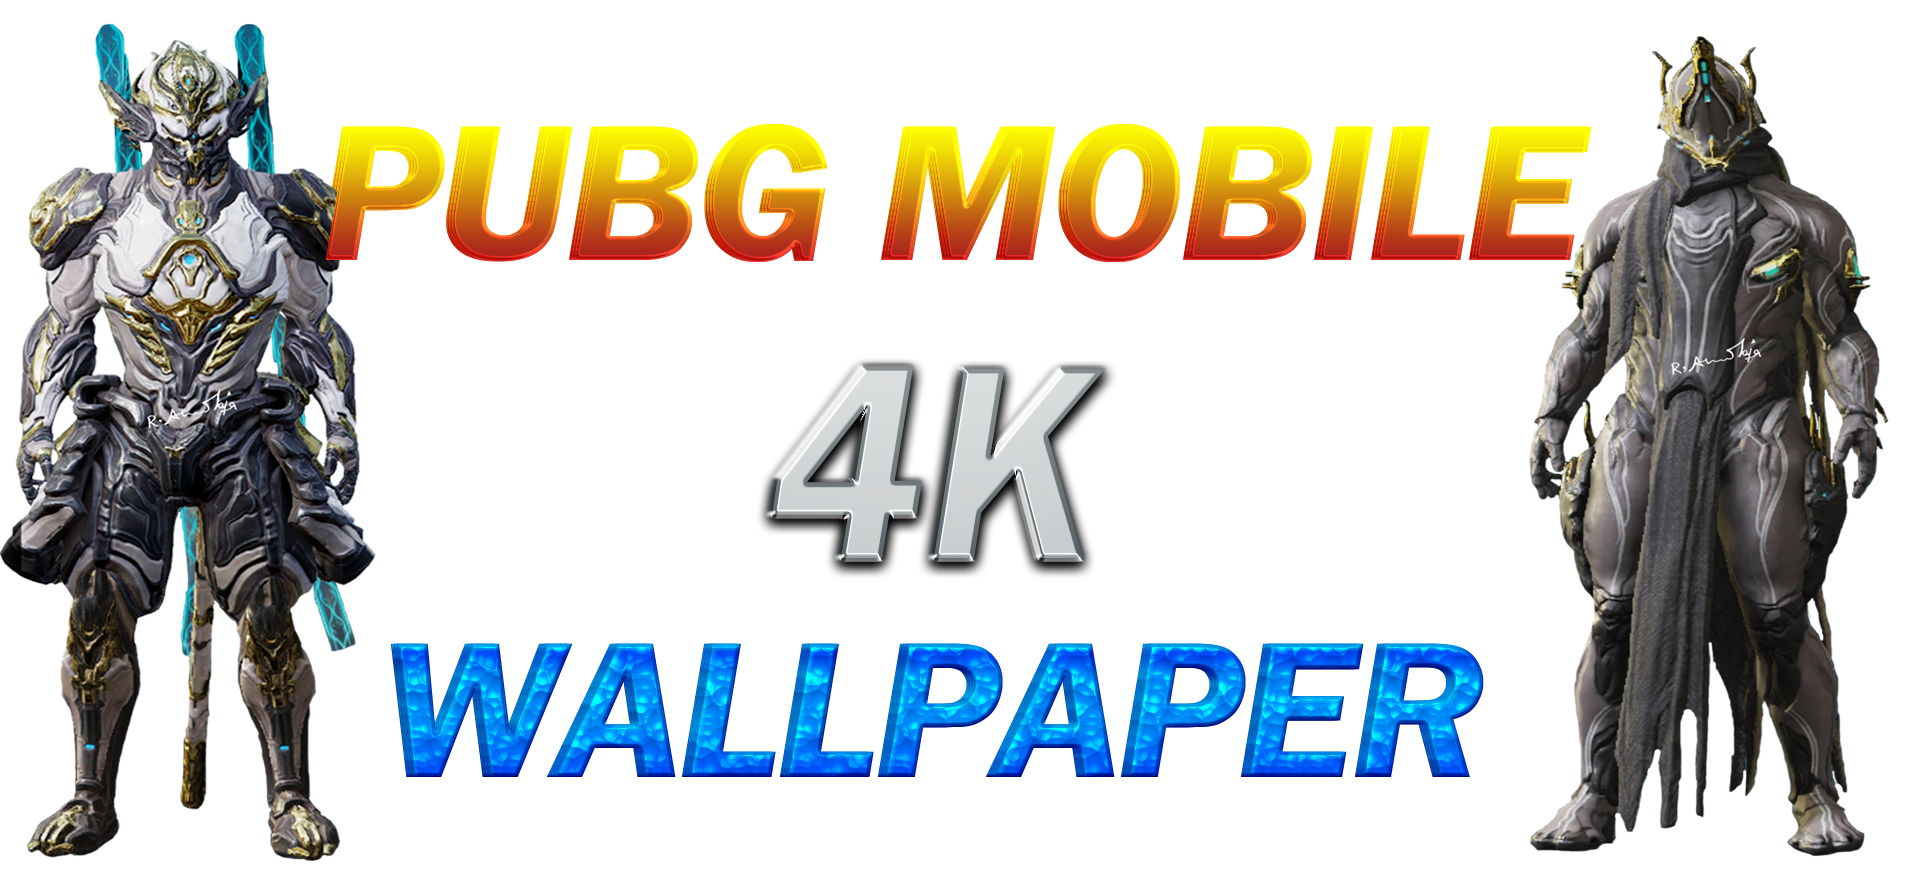 pubg mobile 4k wallpaper , wallpaper,iphone wallpaper